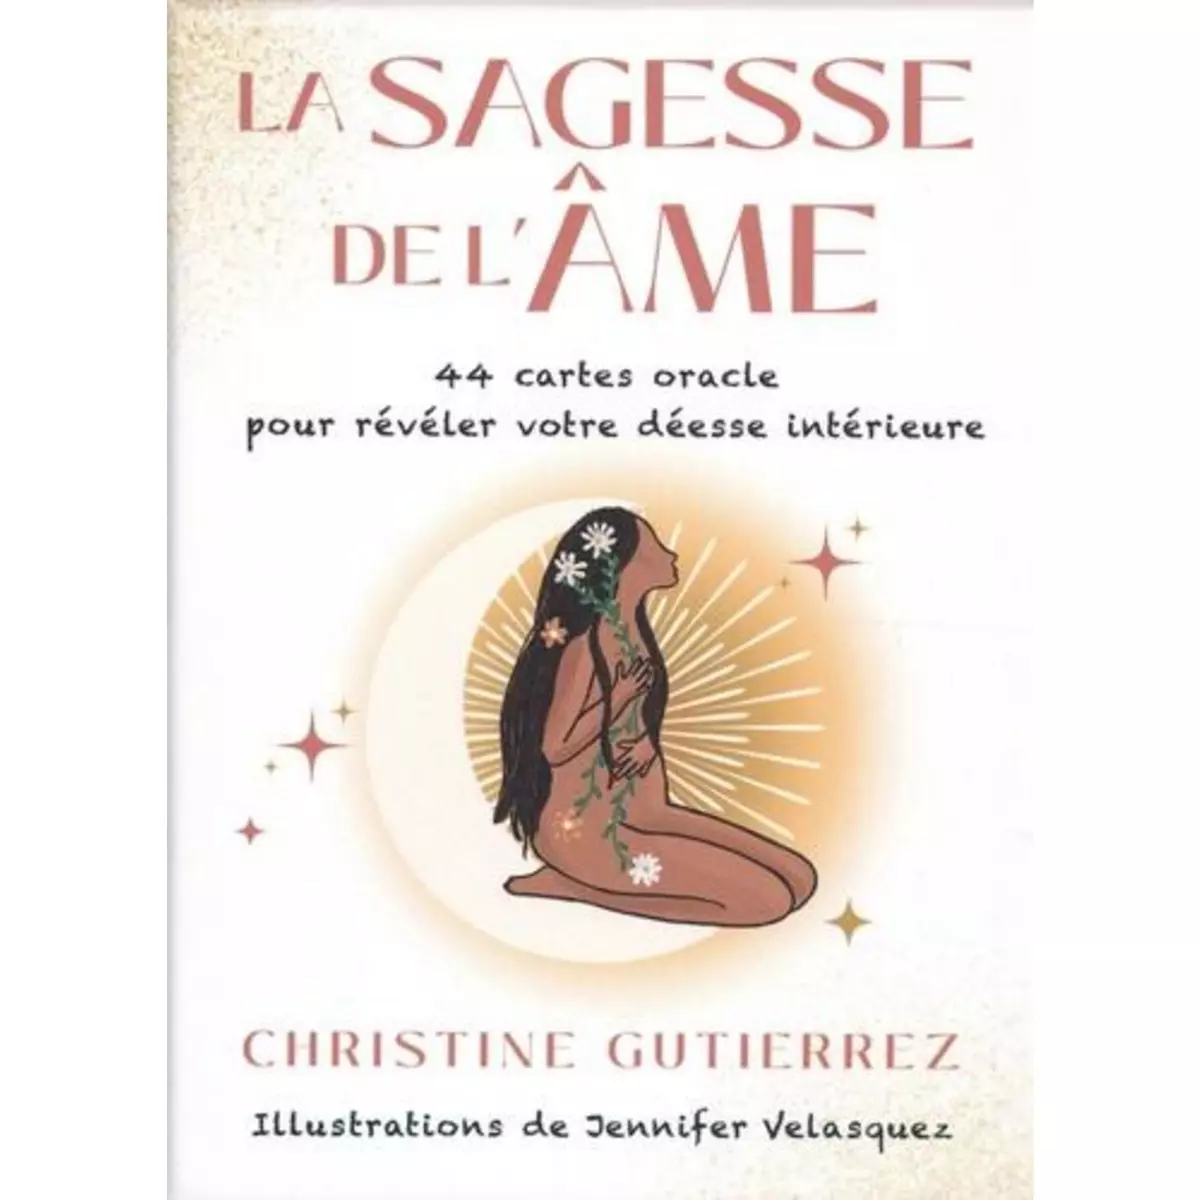  LA SAGESSE DE L'AME. 44 CARTES ORACLE POUR REVELER VOTRE DEESSE INTERIEURE, Gutierrez Christine